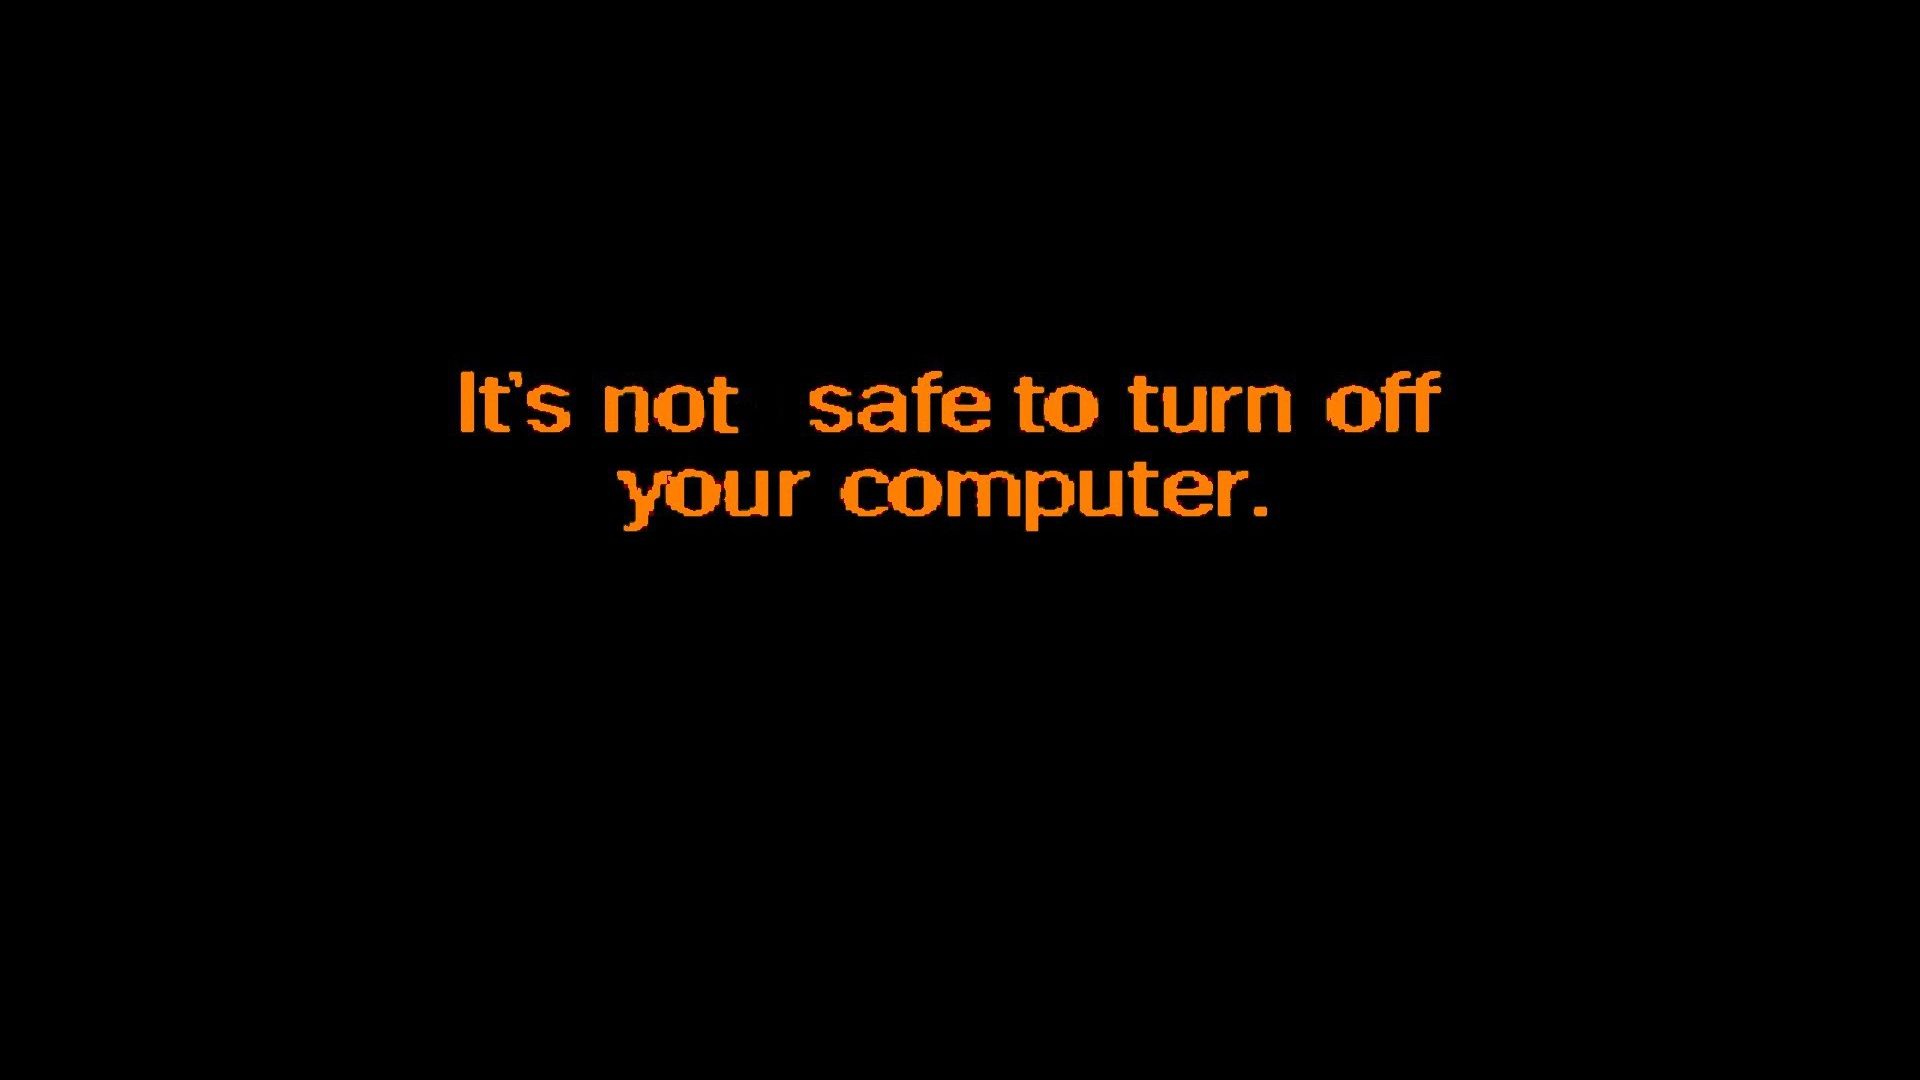 Do not shut down your computer safely Desktop wallpaper 1920x1080